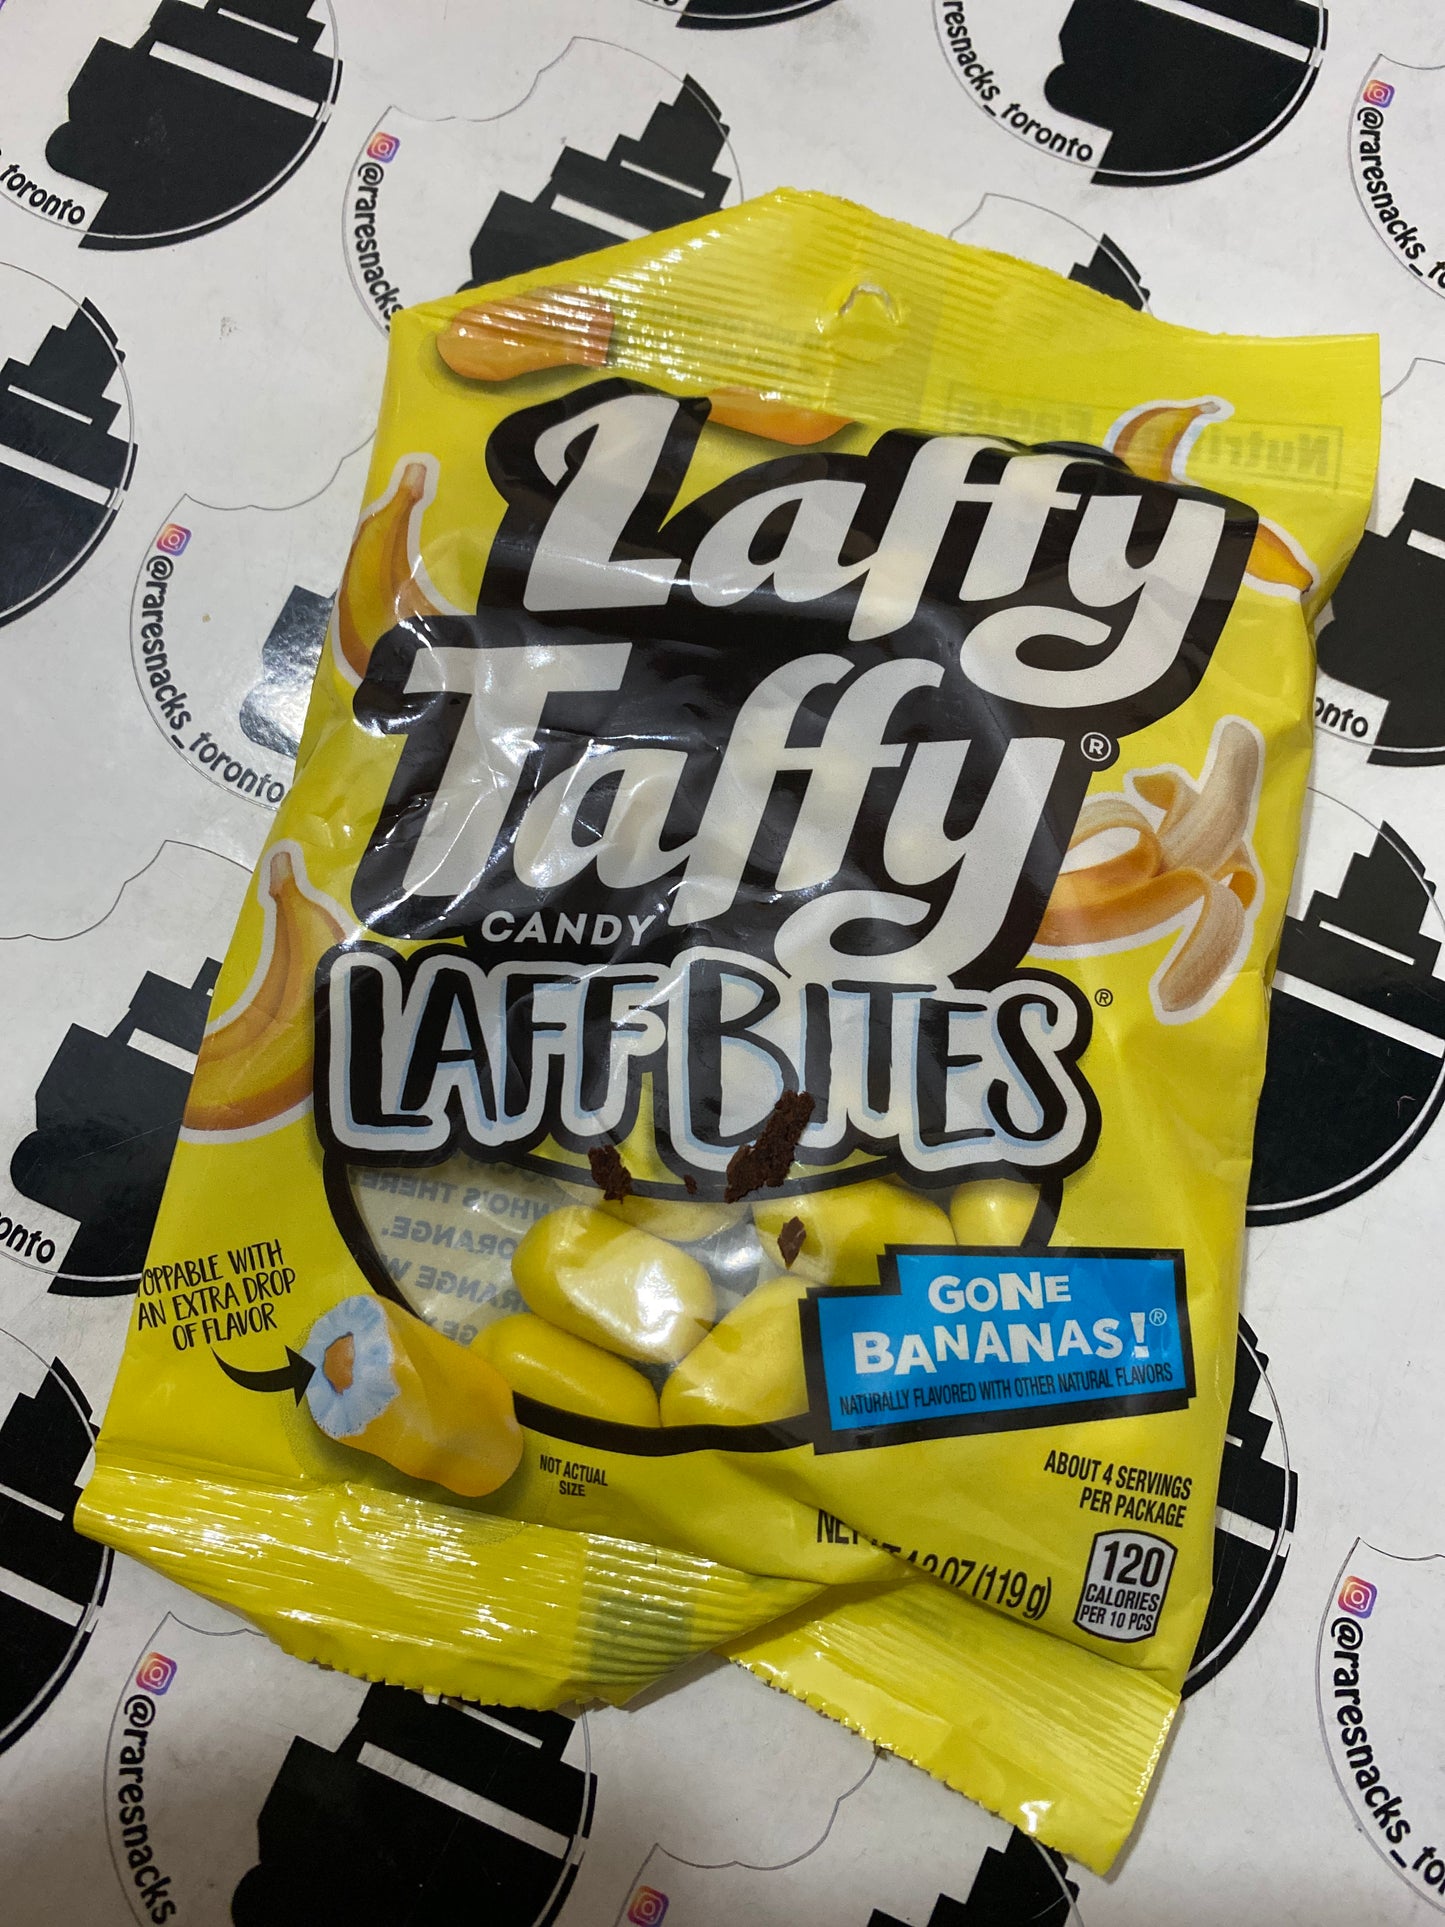 Laffy Taffy Laff Bites Banana 119g